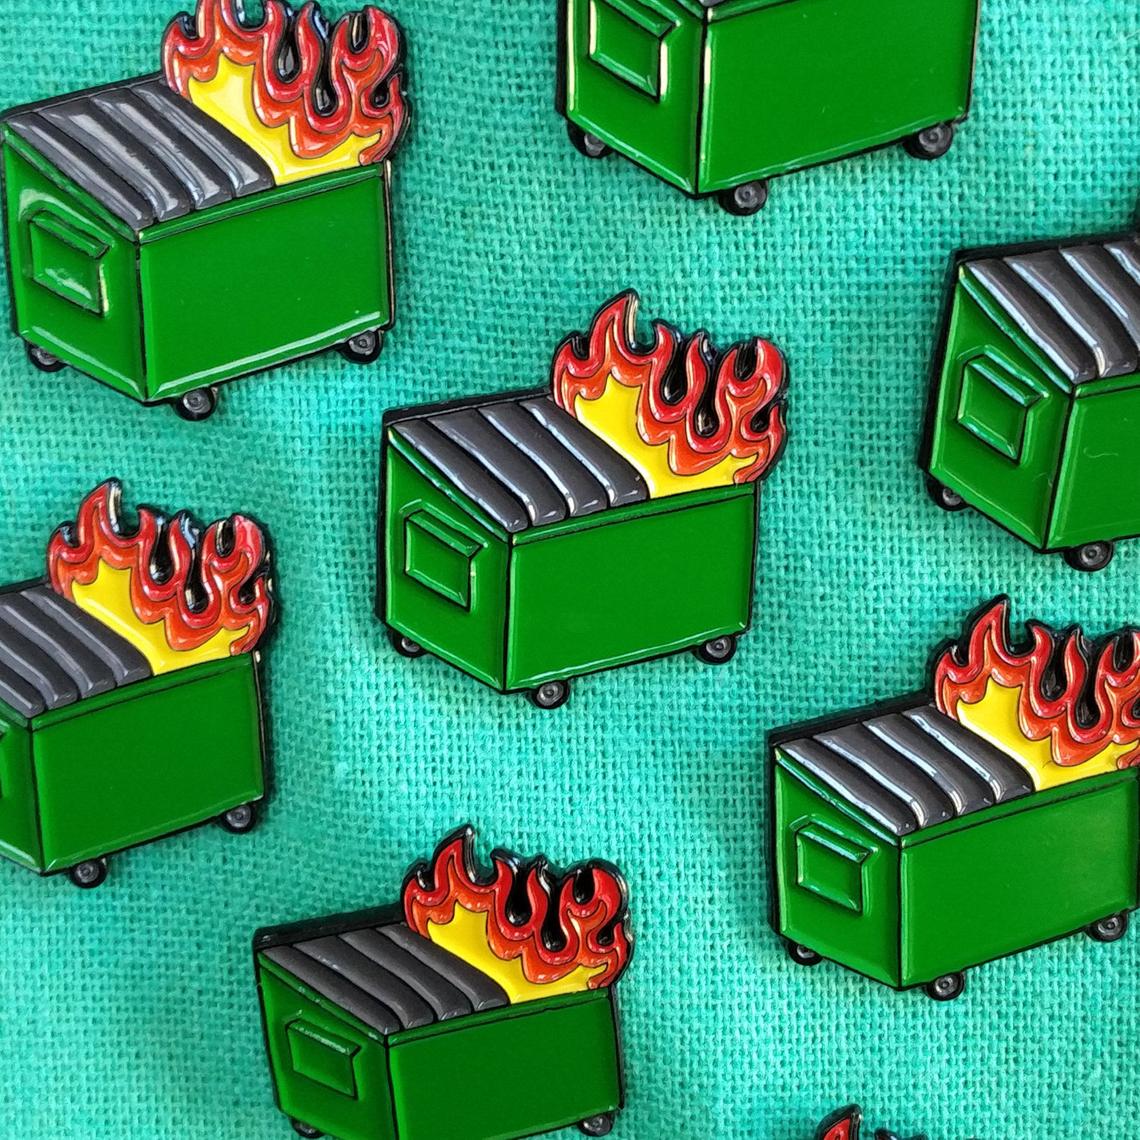 Dumpster Fire Pins